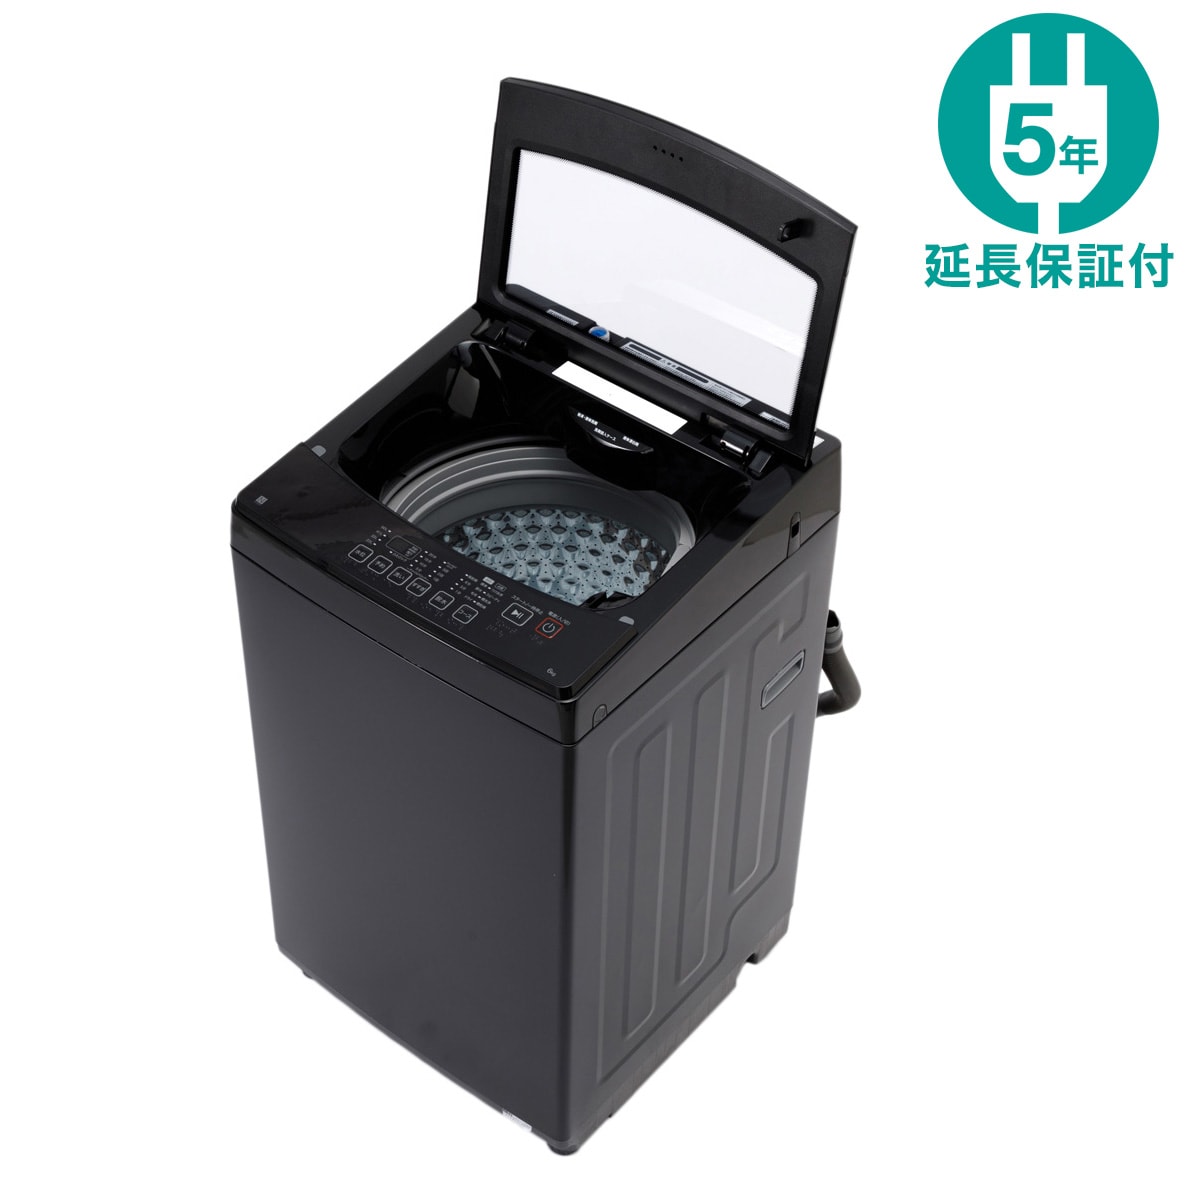 6kg全自動洗濯機(NT60L1 ブラック) 延長保証付き